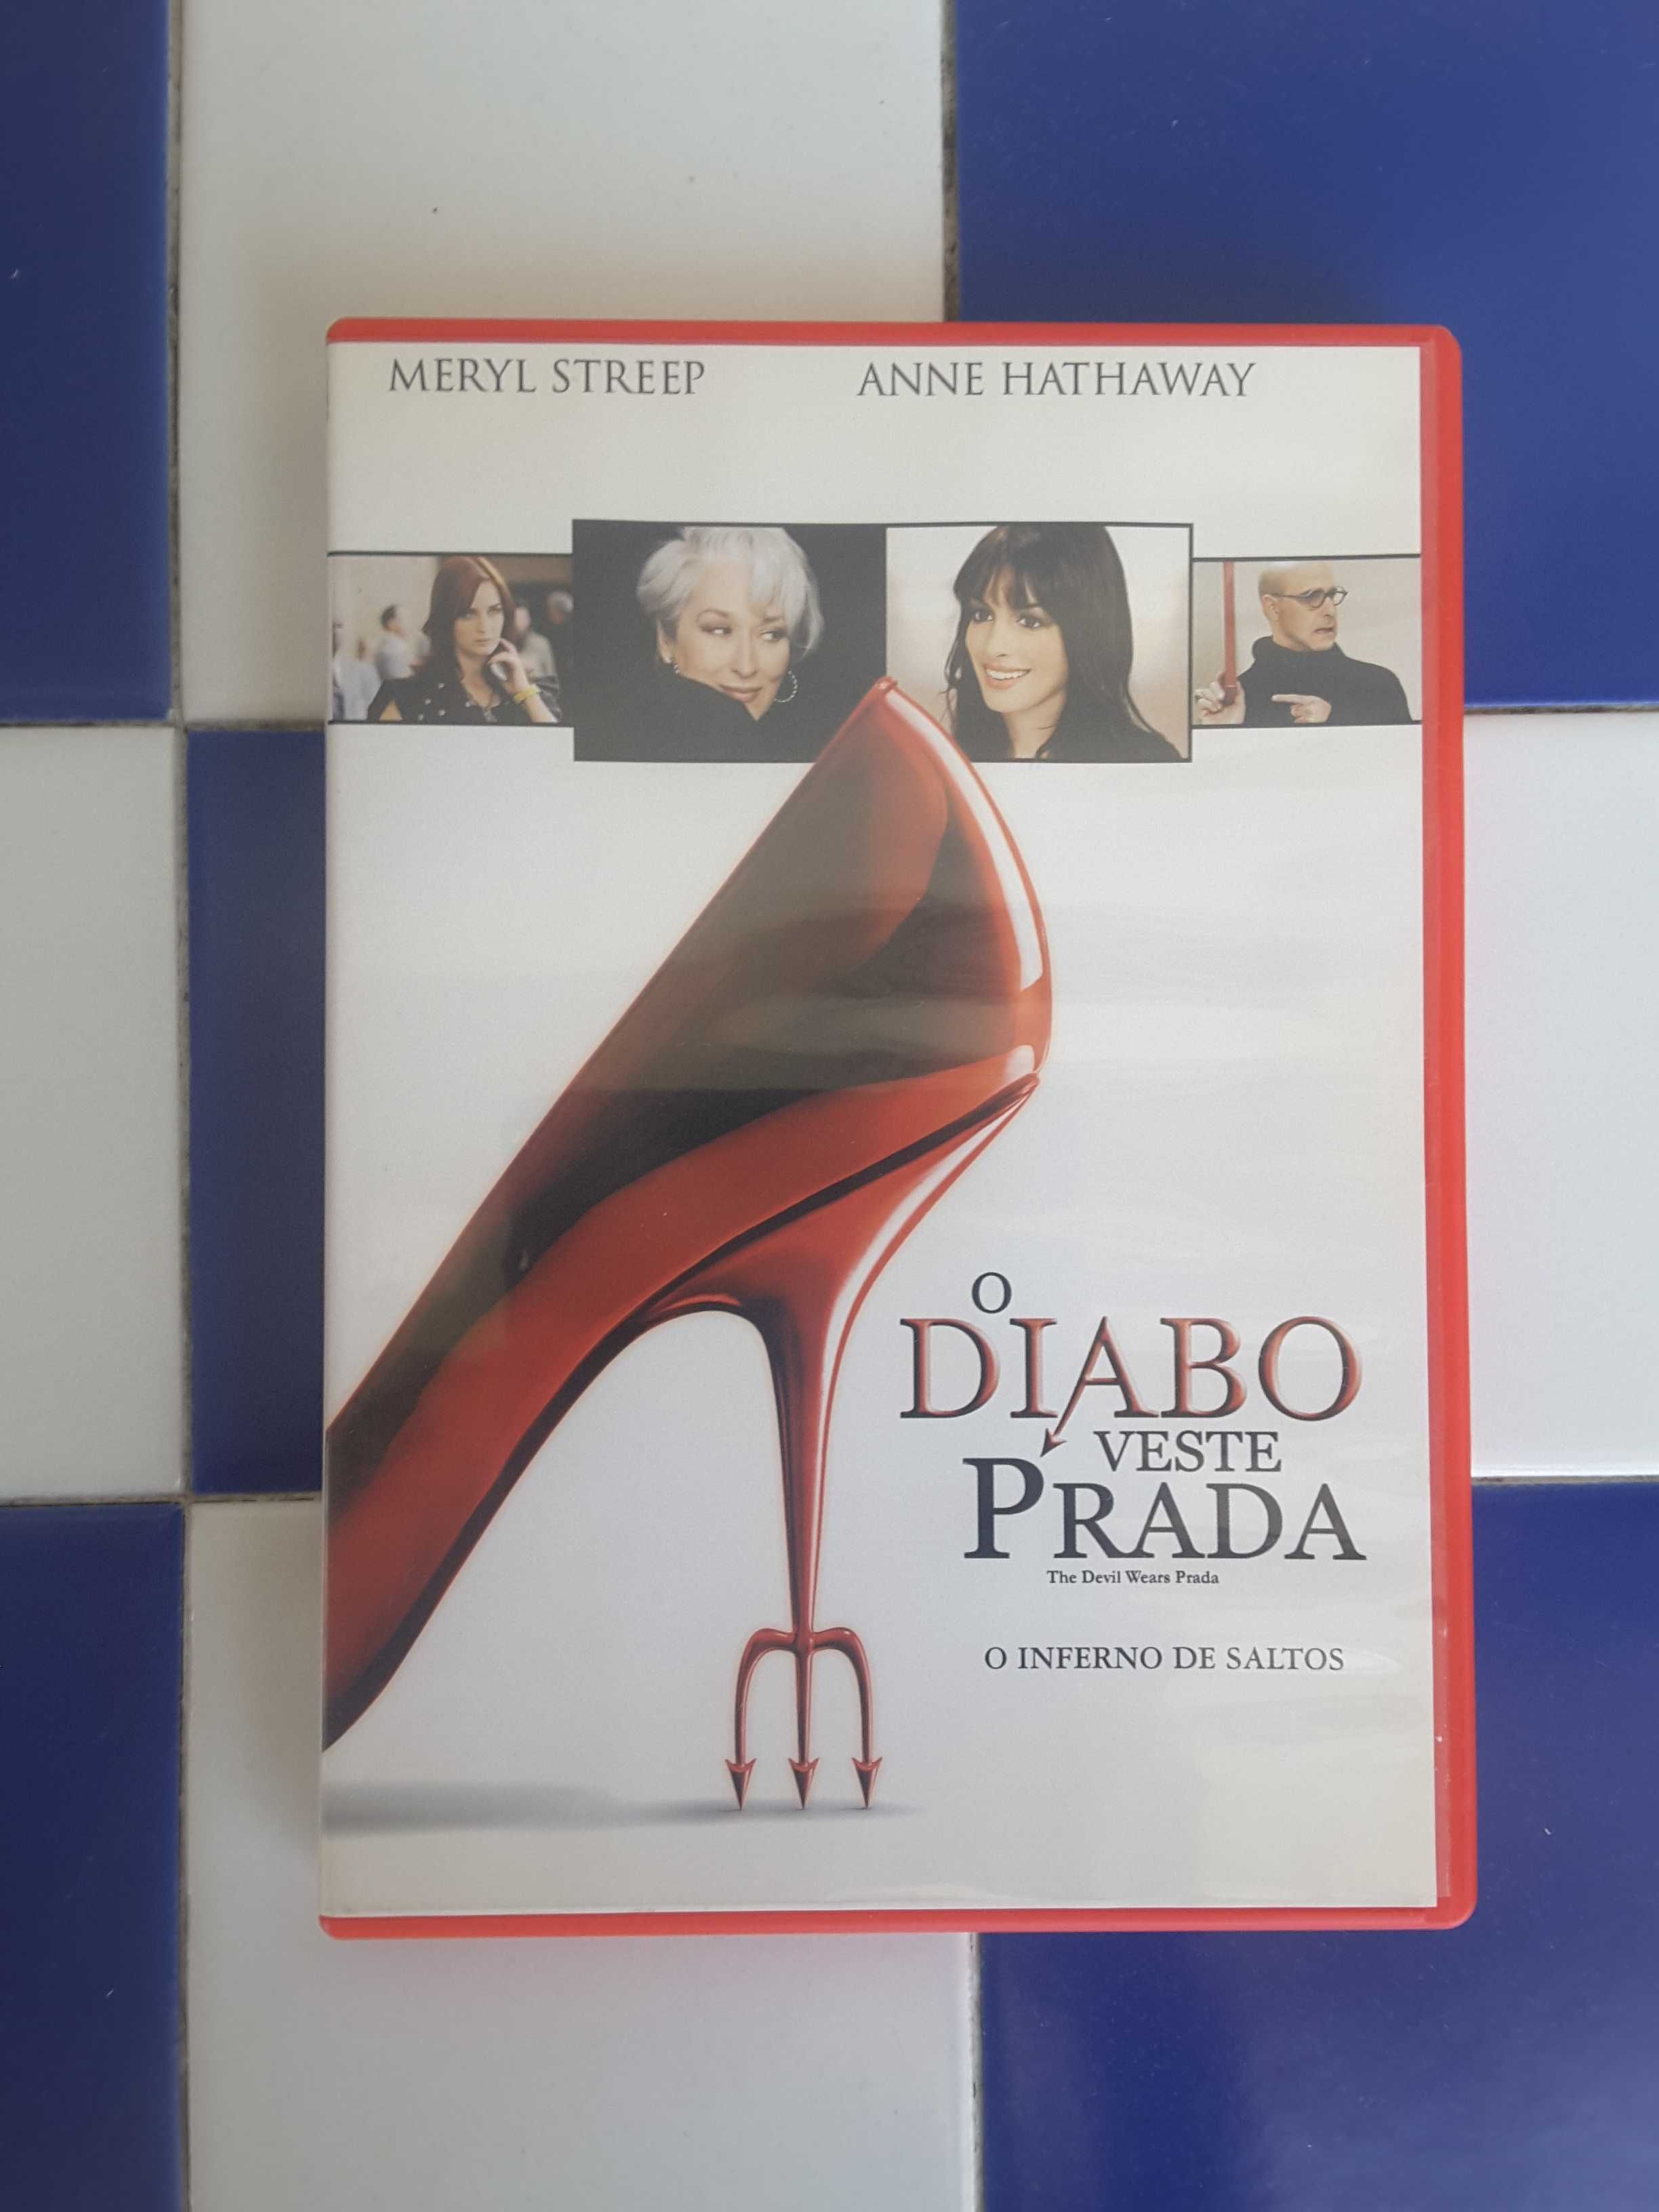 DVD "O Diabo Veste Prada"